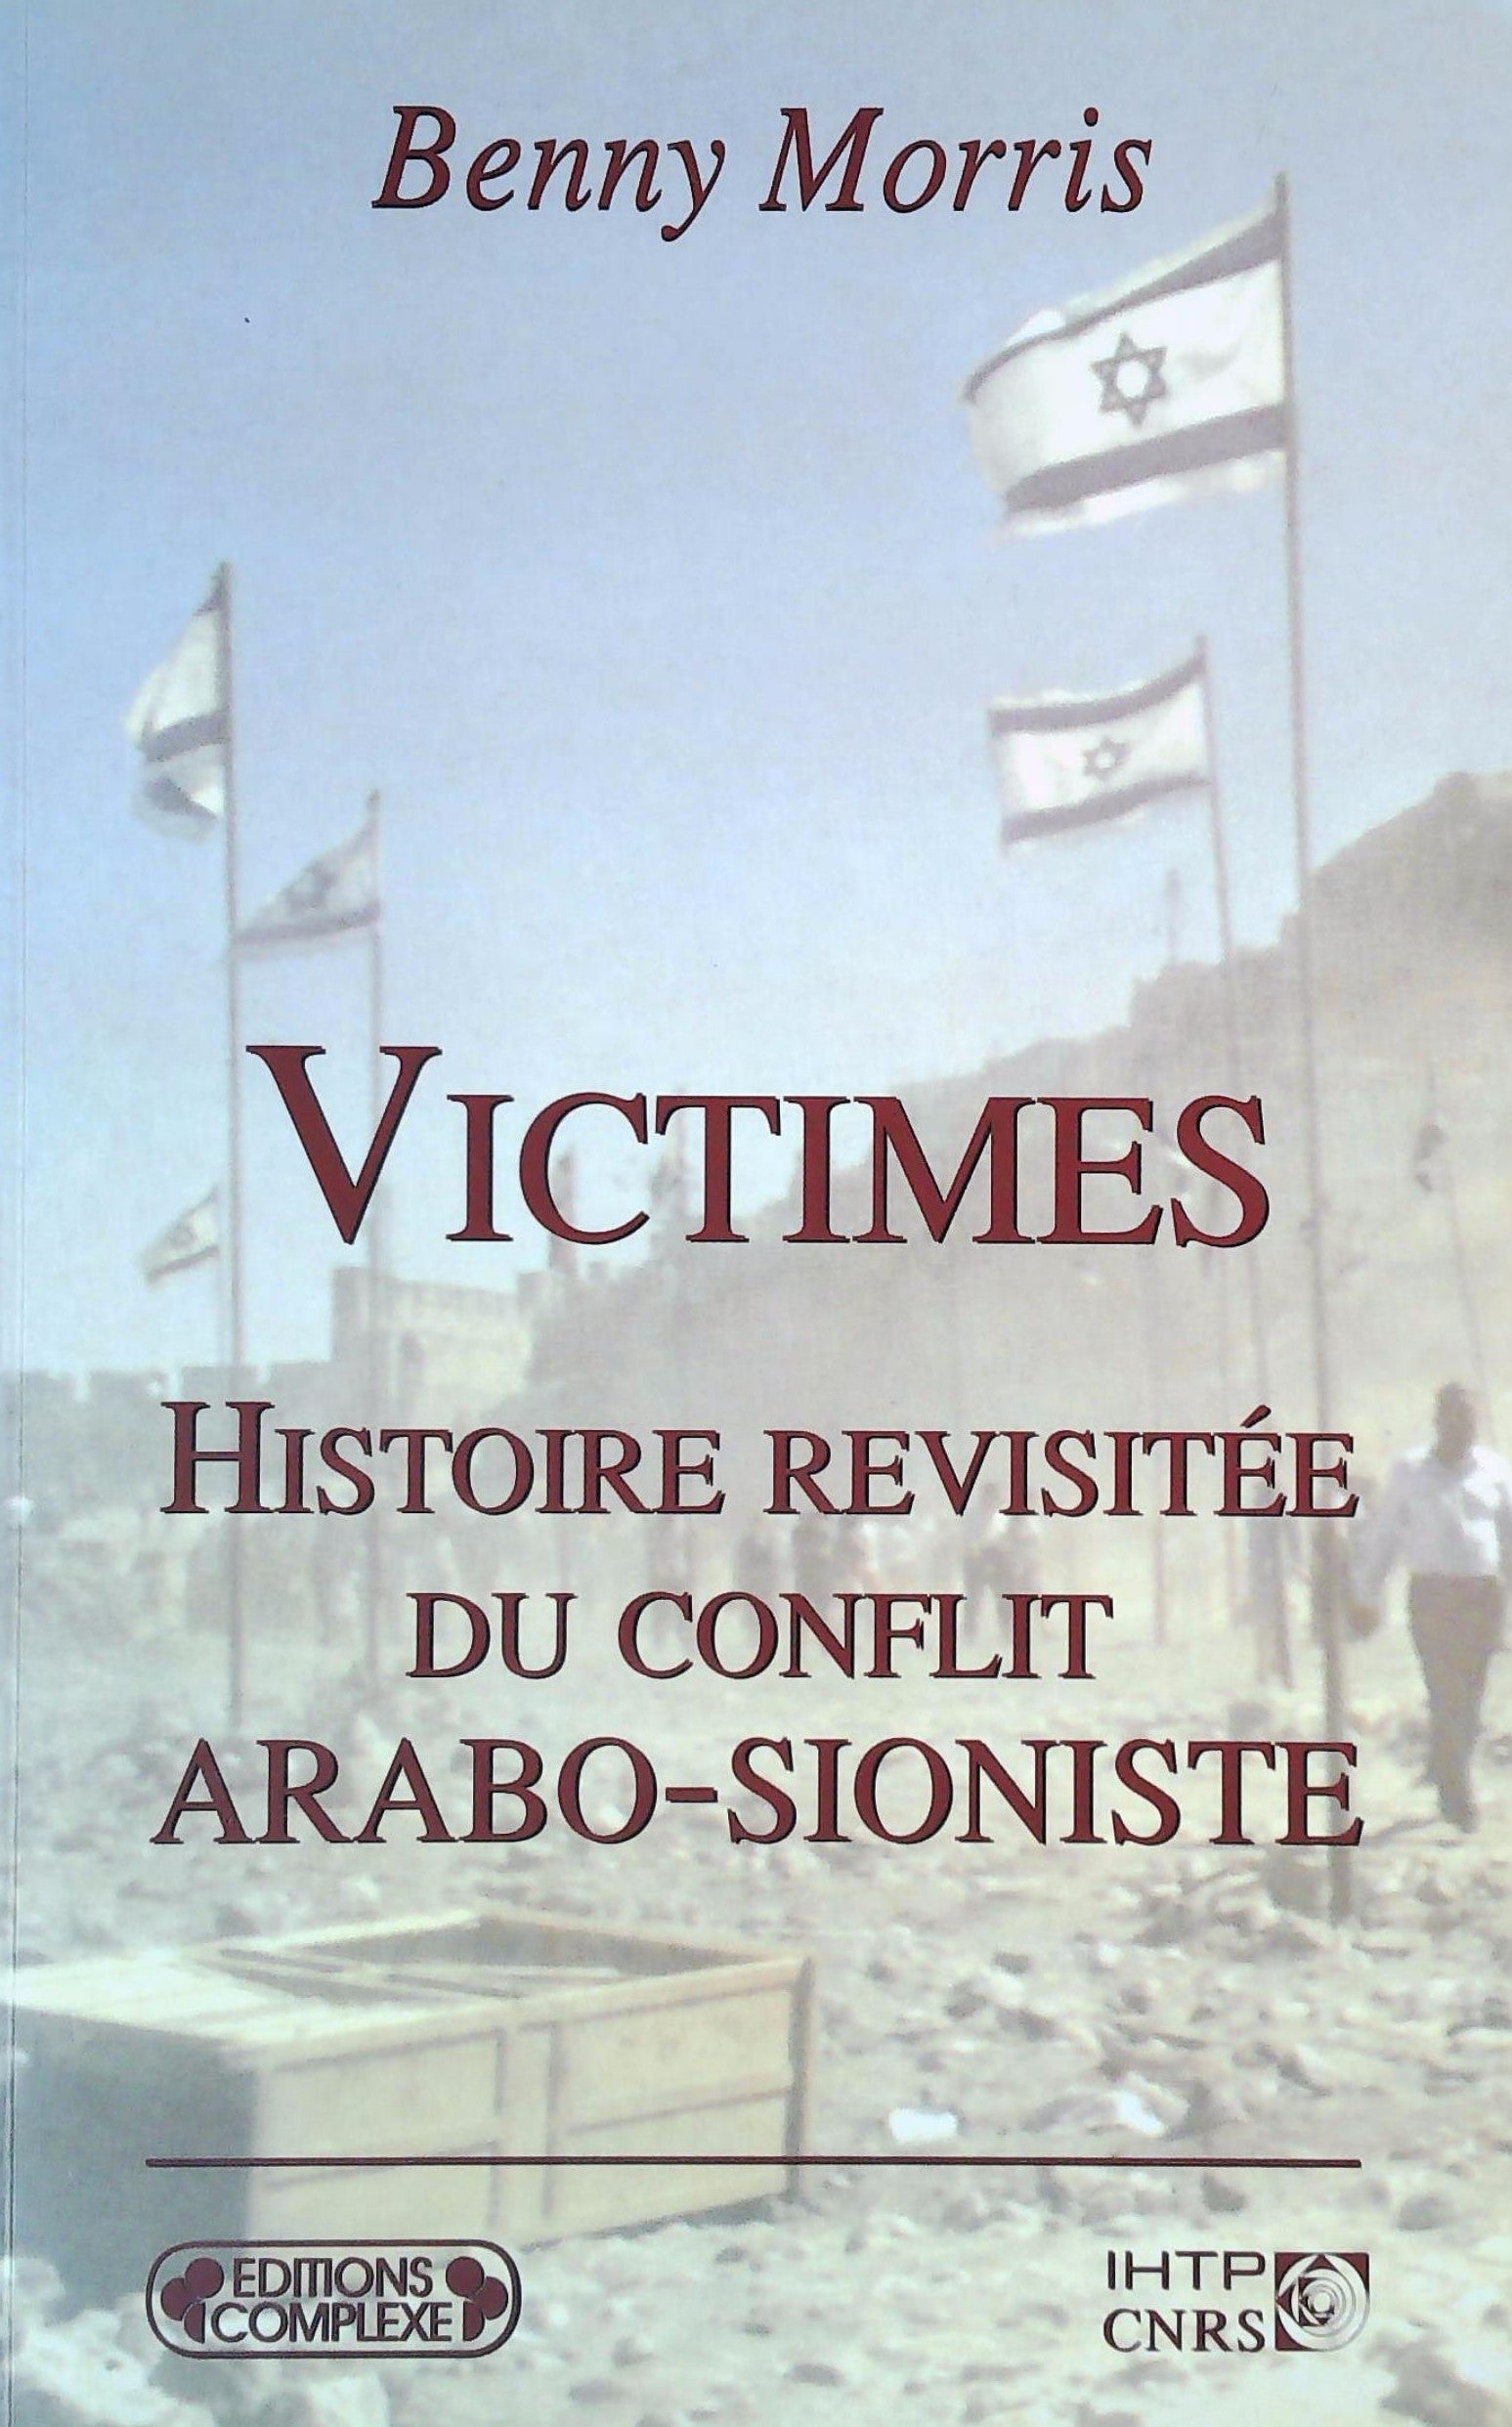 Livre ISBN 2870279388 Victimes : Histoire revisitée du conflit Arabo-Sioniste (Benny Morris)